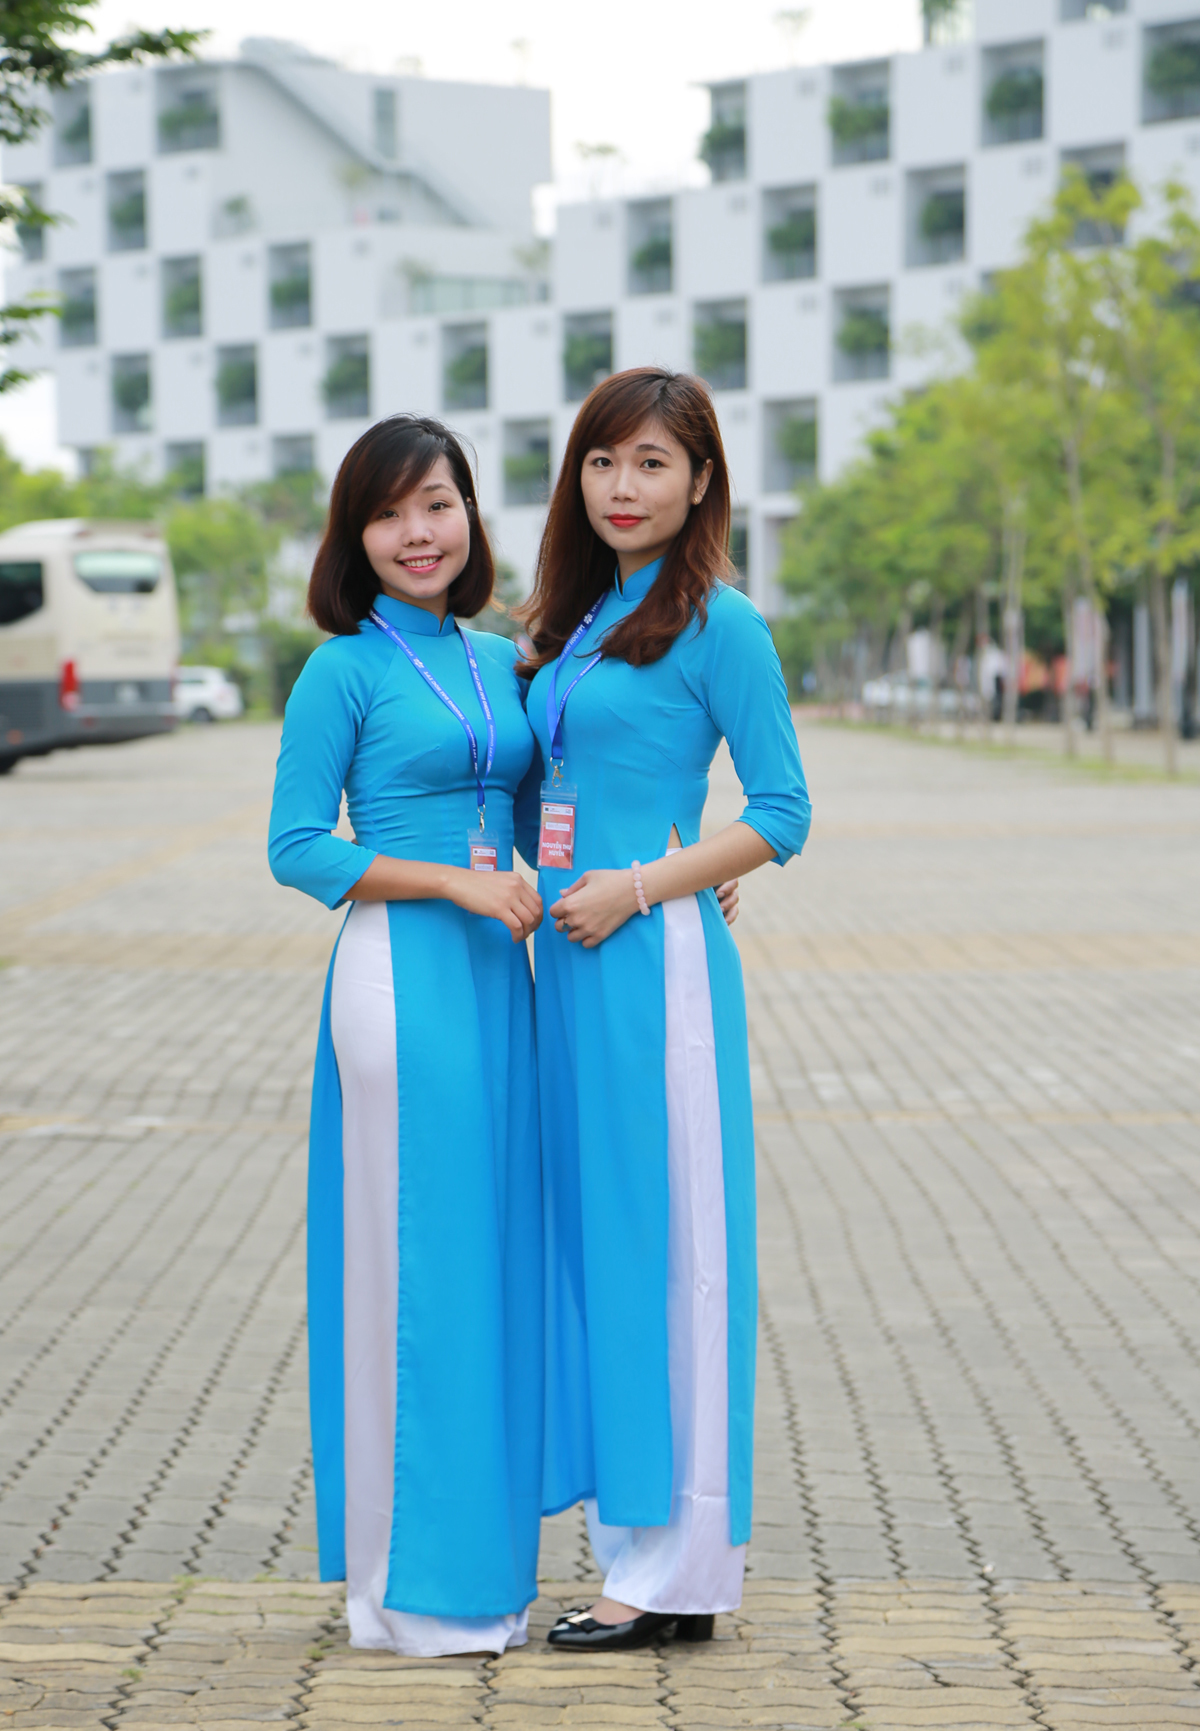 <p> Nguyễn Thị Thu (trái) và Nguyễn Thị Thu Huyền (phải), cán bộ phòng Tuyển sinh, nở nụ cười tươi tắn khi đứng trong khuôn viên đẹp của ĐH FPT.</p>